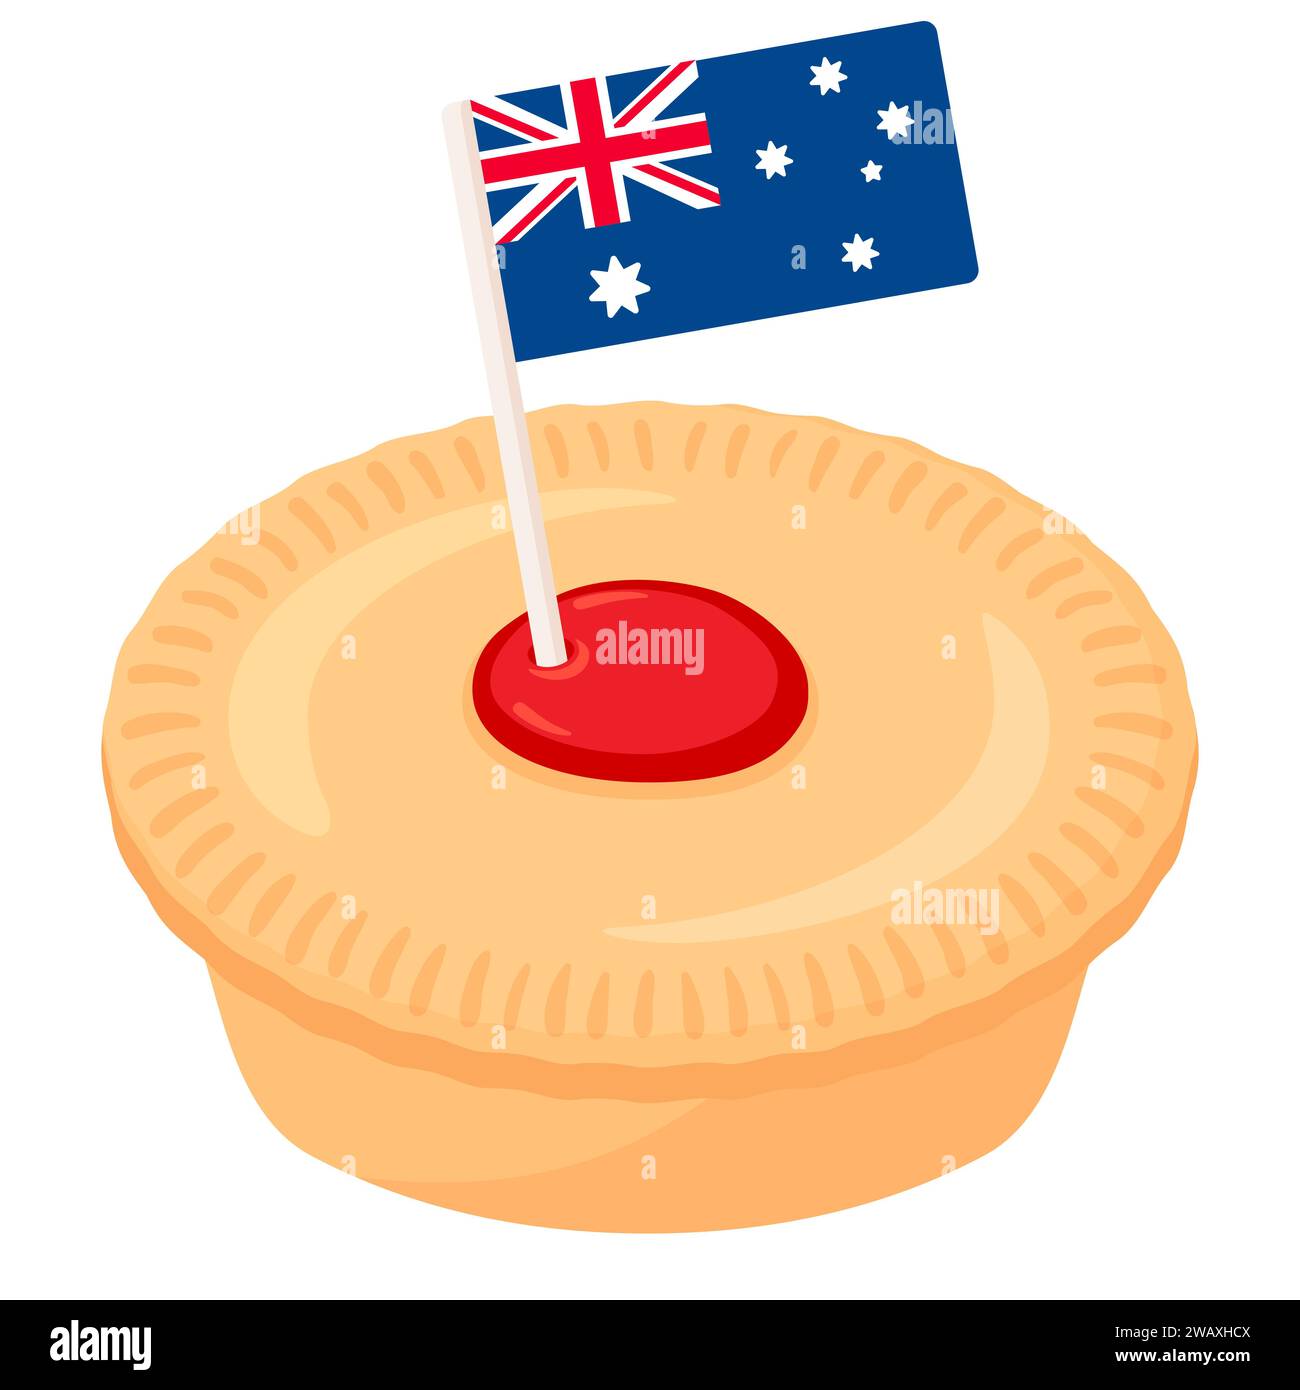 Dessin animé australien de tarte à la viande pour l'Australia Day. Tarte traditionnelle avec garniture de viande hachée de bœuf et drapeau australien. Illustration clip art vectorielle isolée. Illustration de Vecteur